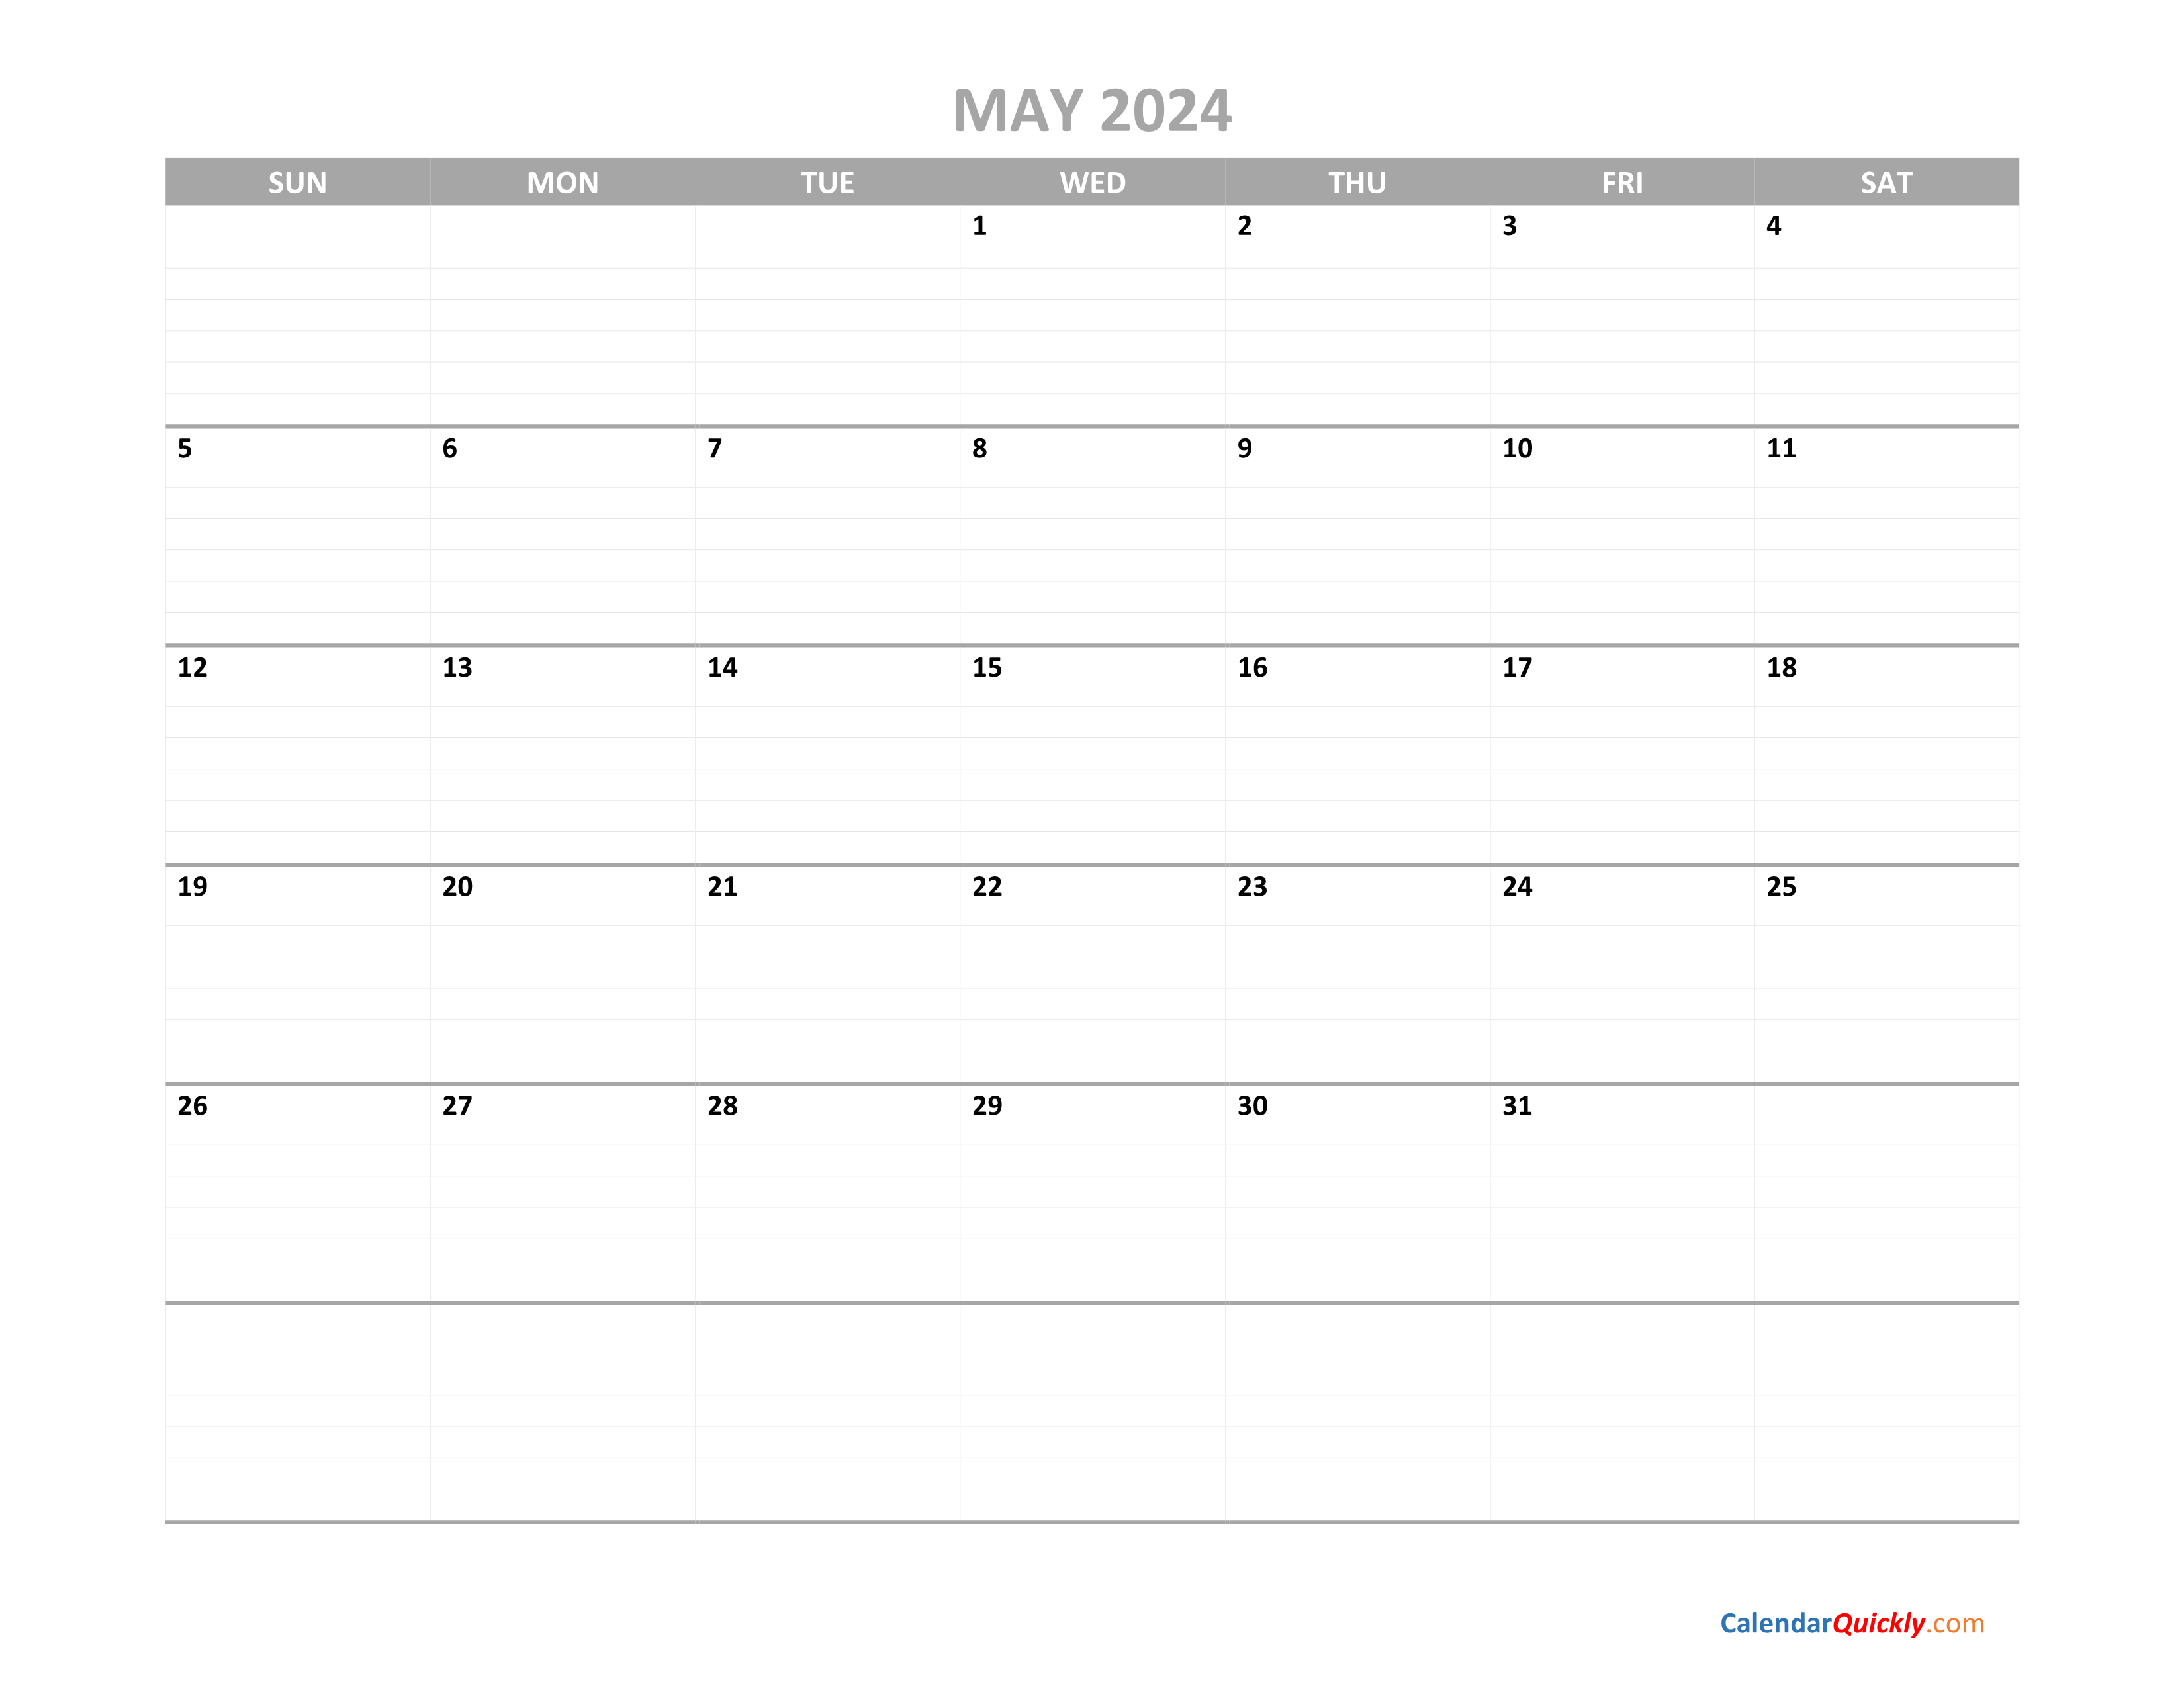 may-calendar-2024-printable-calendar-quickly